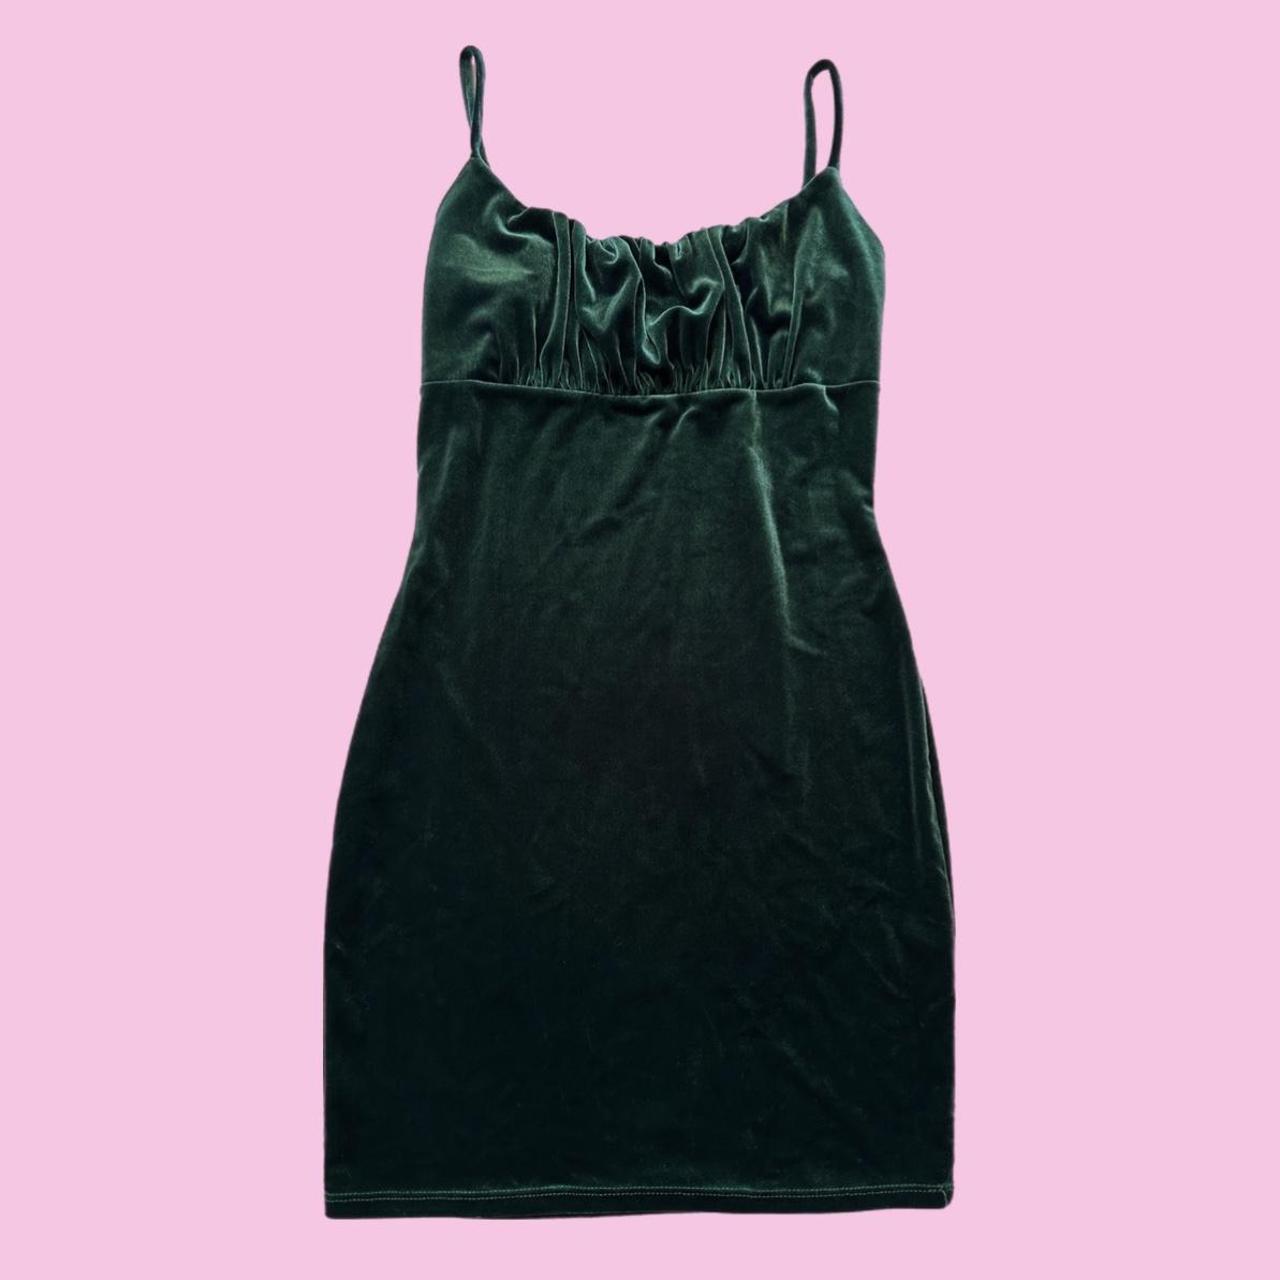 Green Velvet Dress ️Measurements ️ Size: Large Pit... - Depop